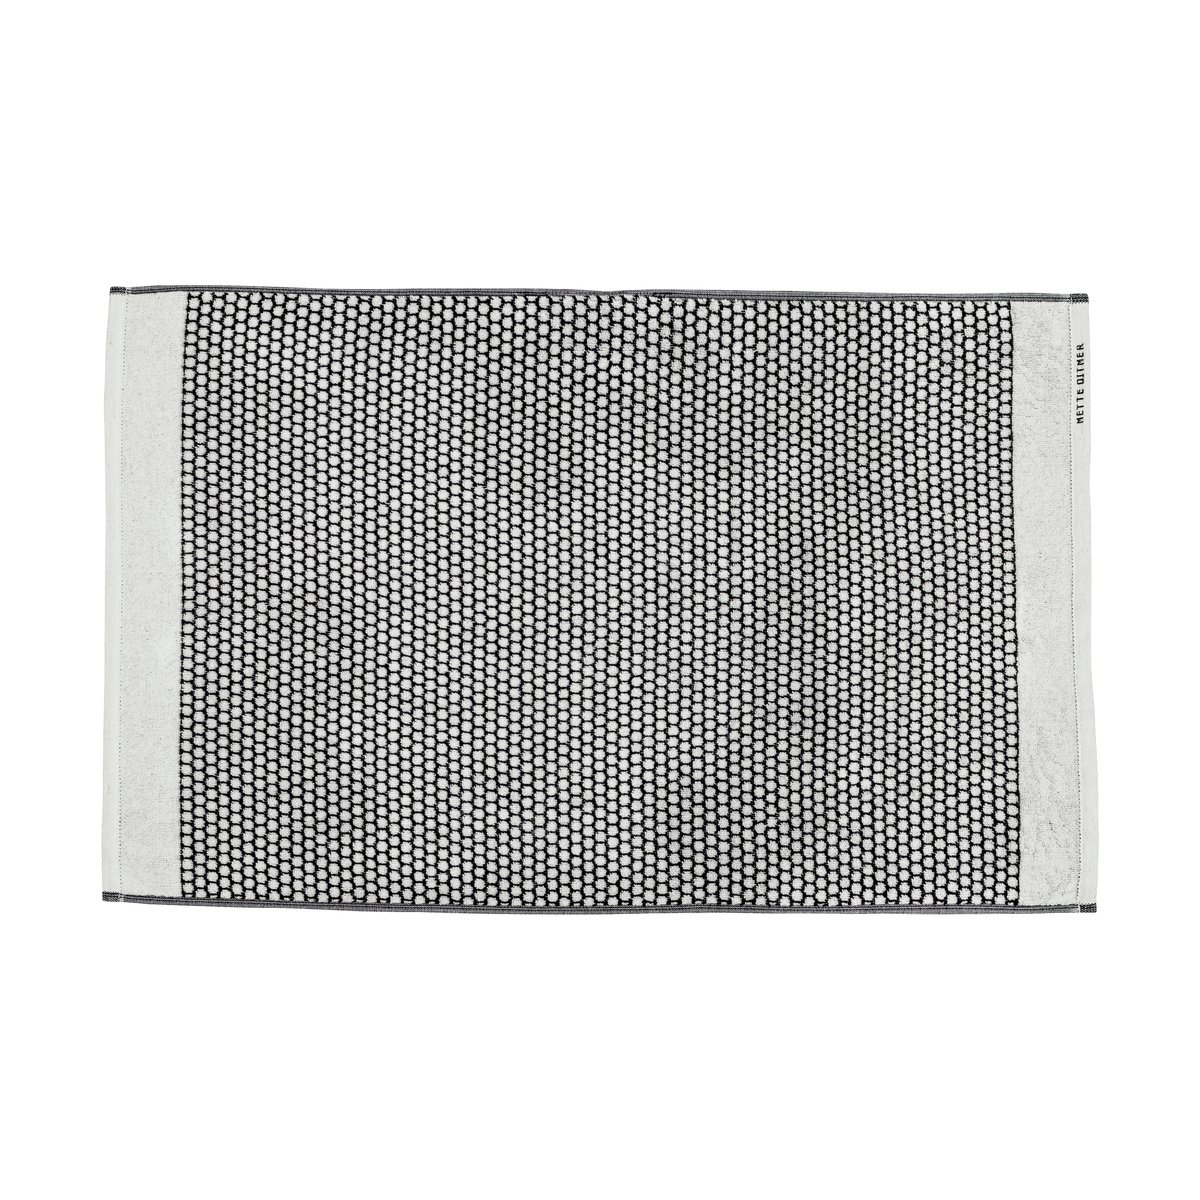 Mette Ditmer Grid kylpyhuonematto 50×80 cm Musta-off white